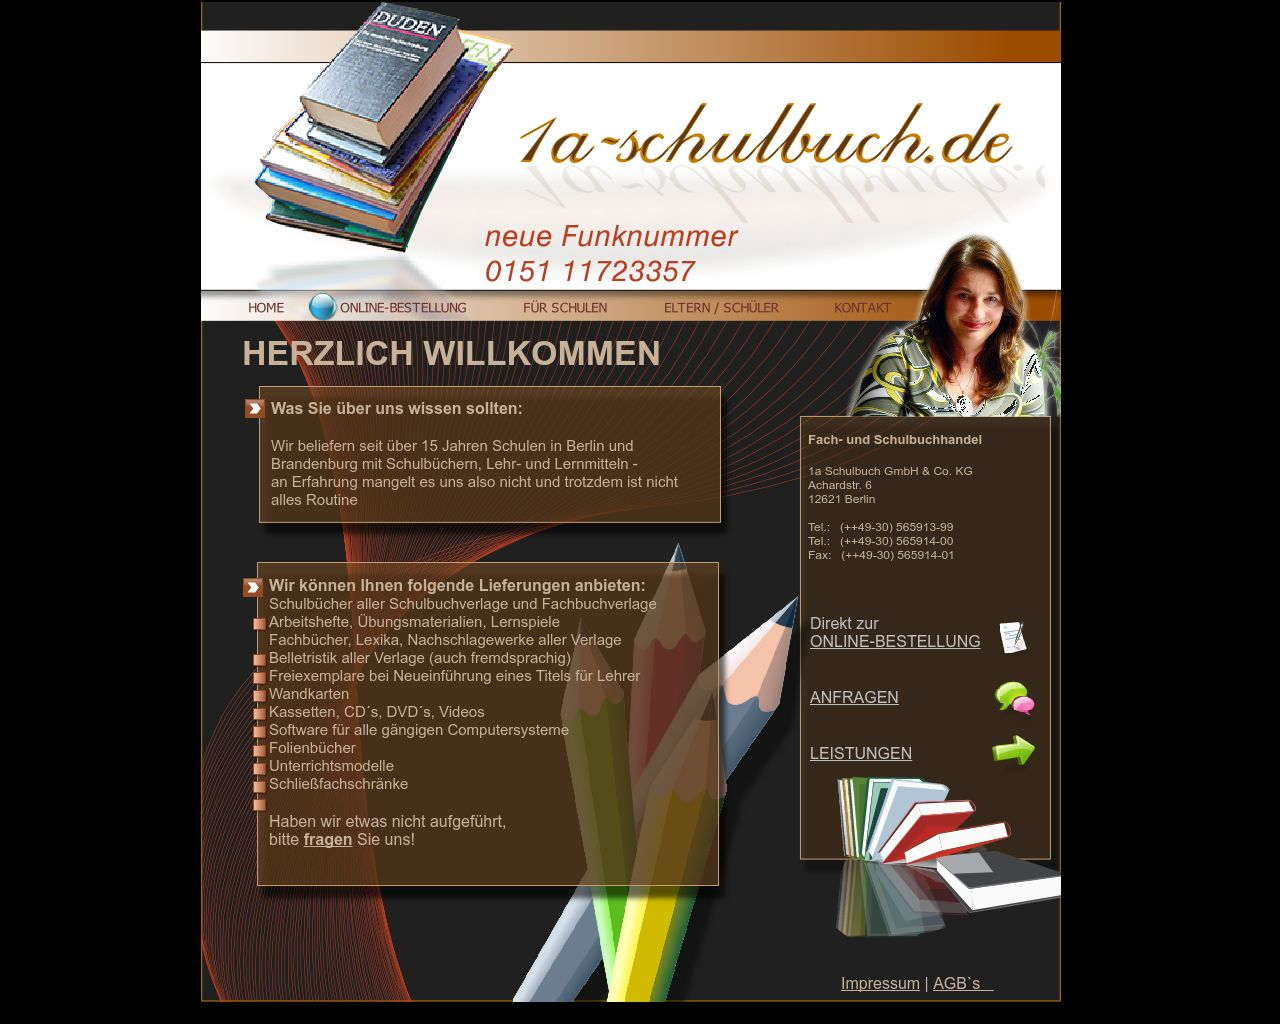 Bild Website 1a-schulbuch.de in 1280x1024